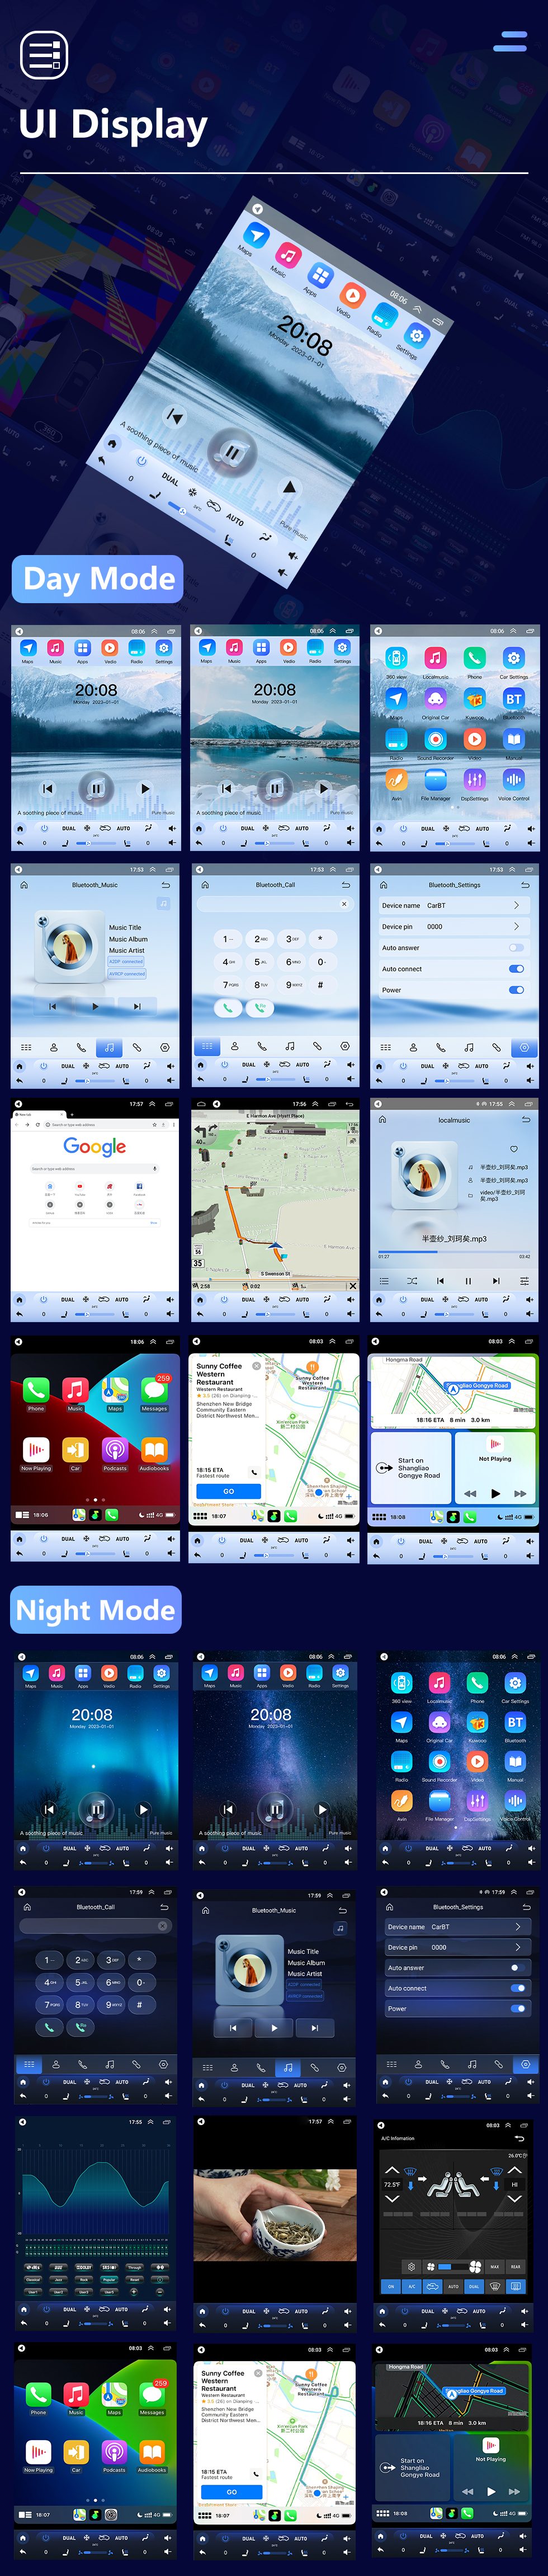 Seicane HD-Touchscreen 2013 Honda Jade Android 10.0 9,7 Zoll GPS-Navigationsradio Bluetooth WIFI-Unterstützung Lenkradsteuerung Carplay